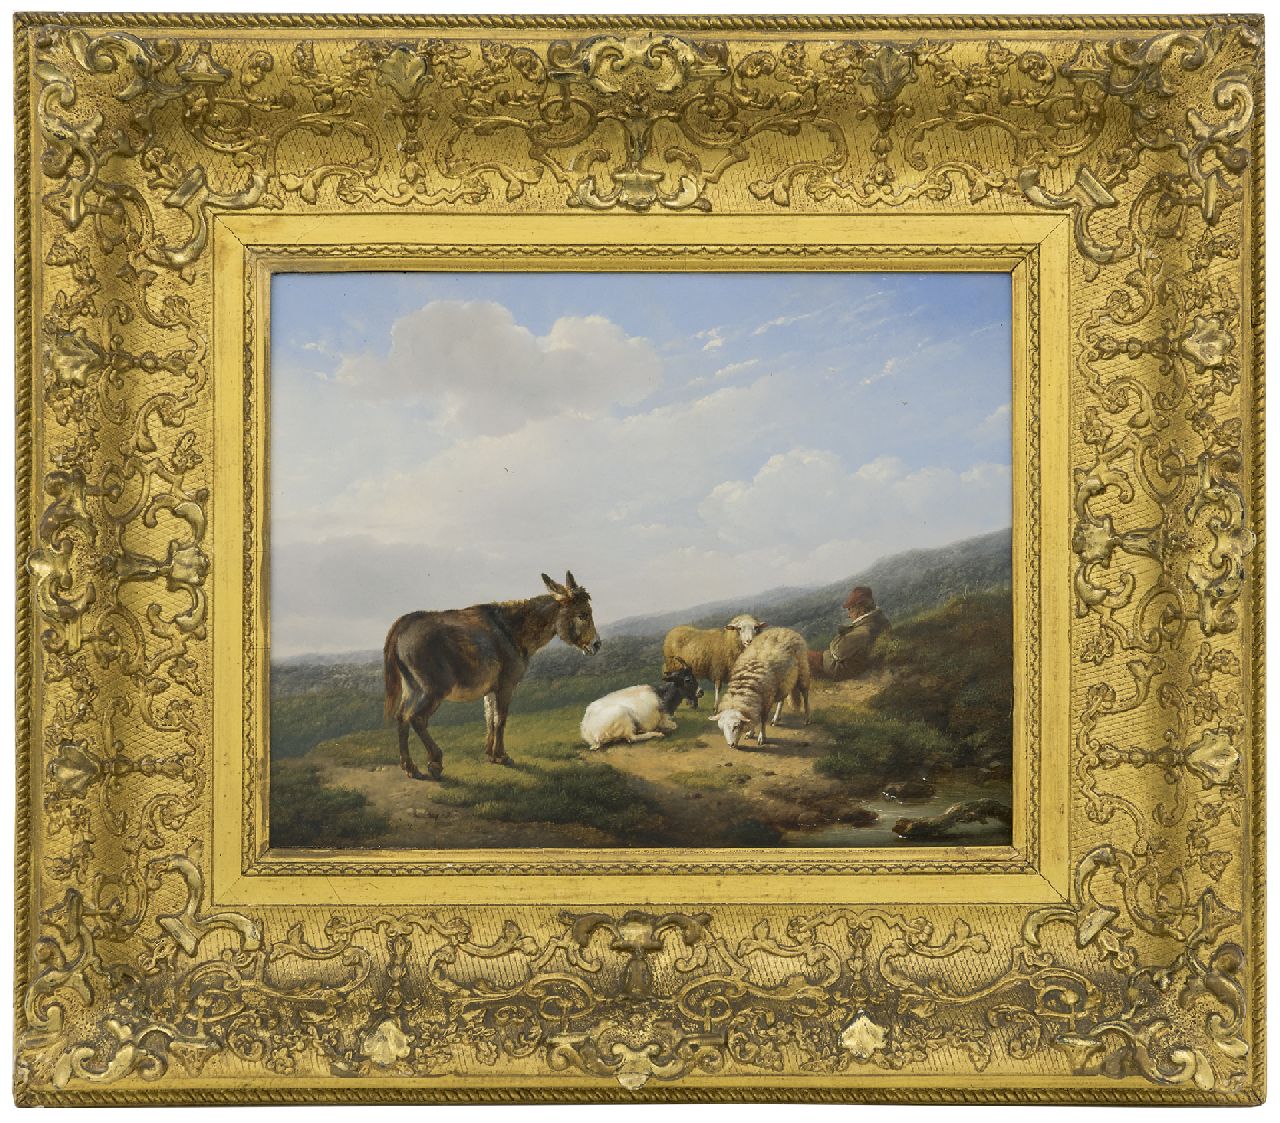 Verboeckhoven E.J.  | Eugène Joseph Verboeckhoven | Schilderijen te koop aangeboden | Rustende herder met schapen, bok en ezel, olieverf op paneel 24,7 x 32,2 cm, gesigneerd linksonder